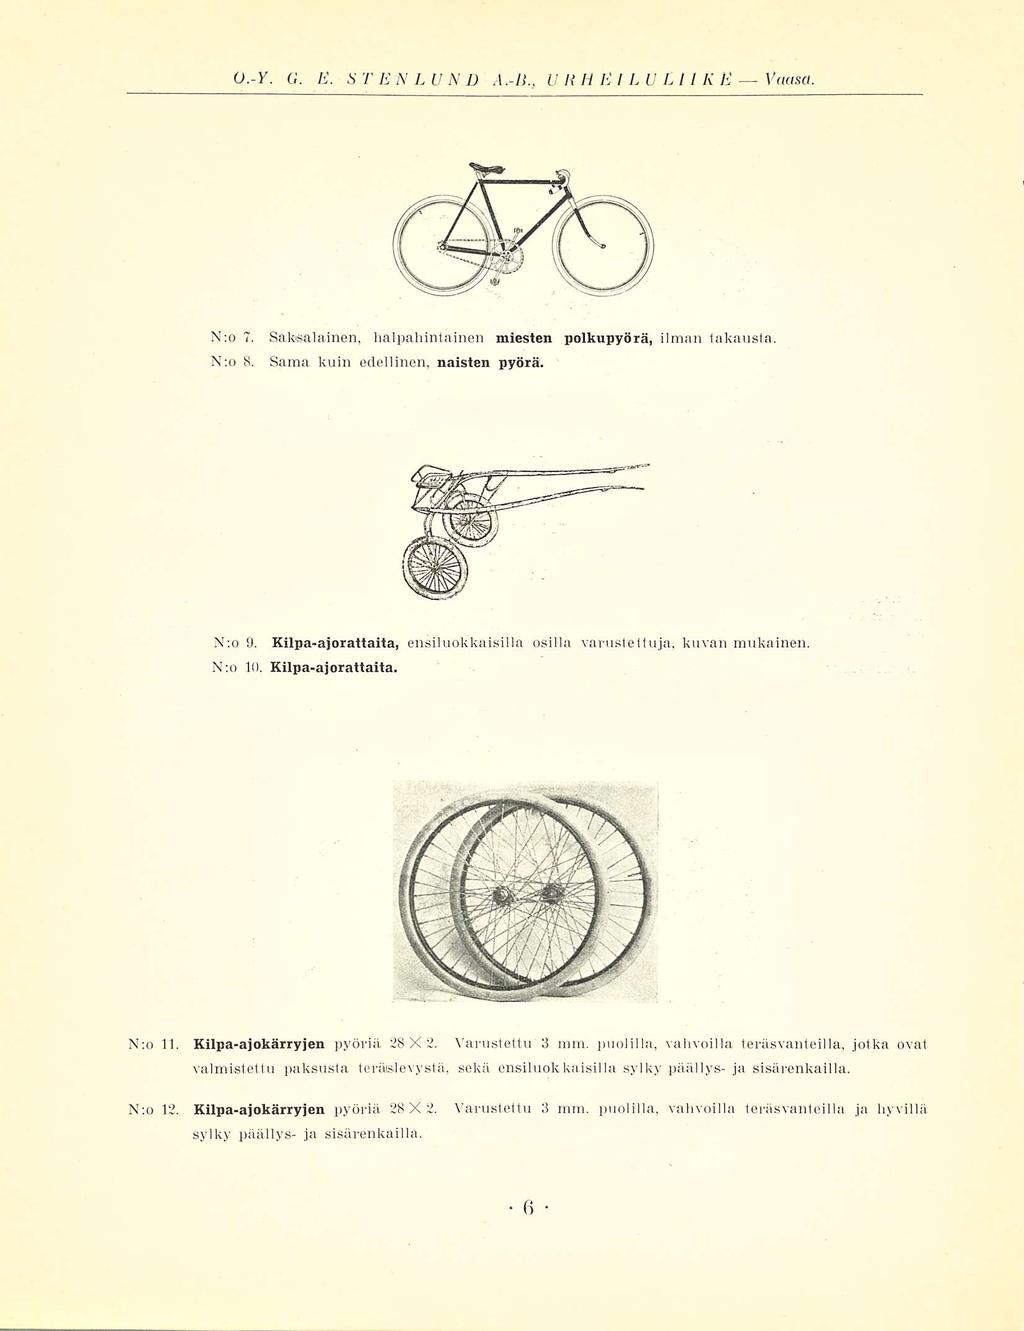 0.-Y. G. E. STENLUND A.-li., URHEILULIIKE Vuusa. N:o 7. Saksalainen, halpahintainen miesten polkupyörä, ilman takausta, N;o 8. Sama kuin edellinen, naisten pyörä. N:o 9.